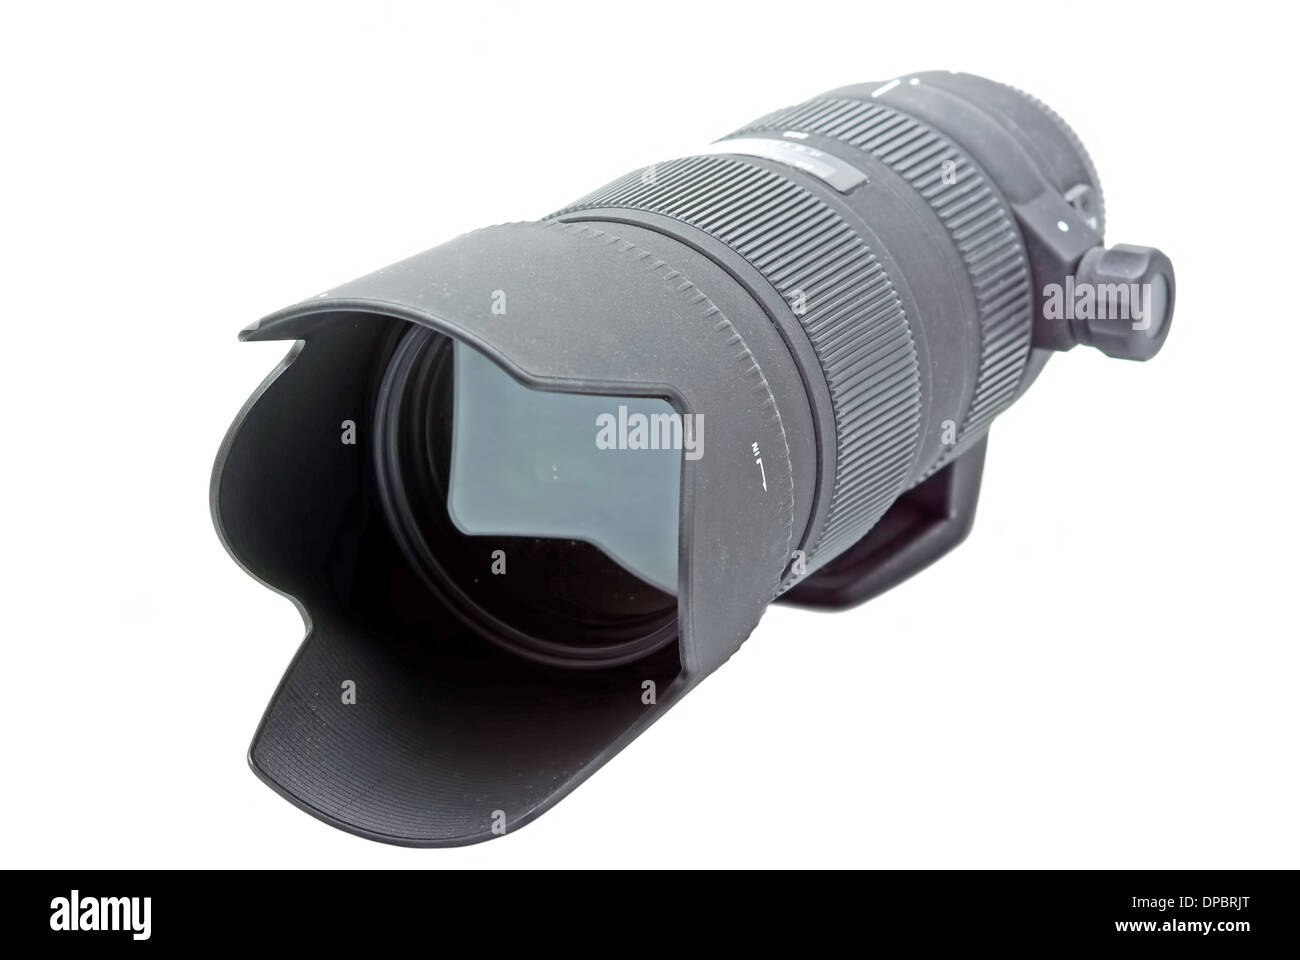 Lente de zoom telescópico para cámara DSLR en blanco Foto de stock